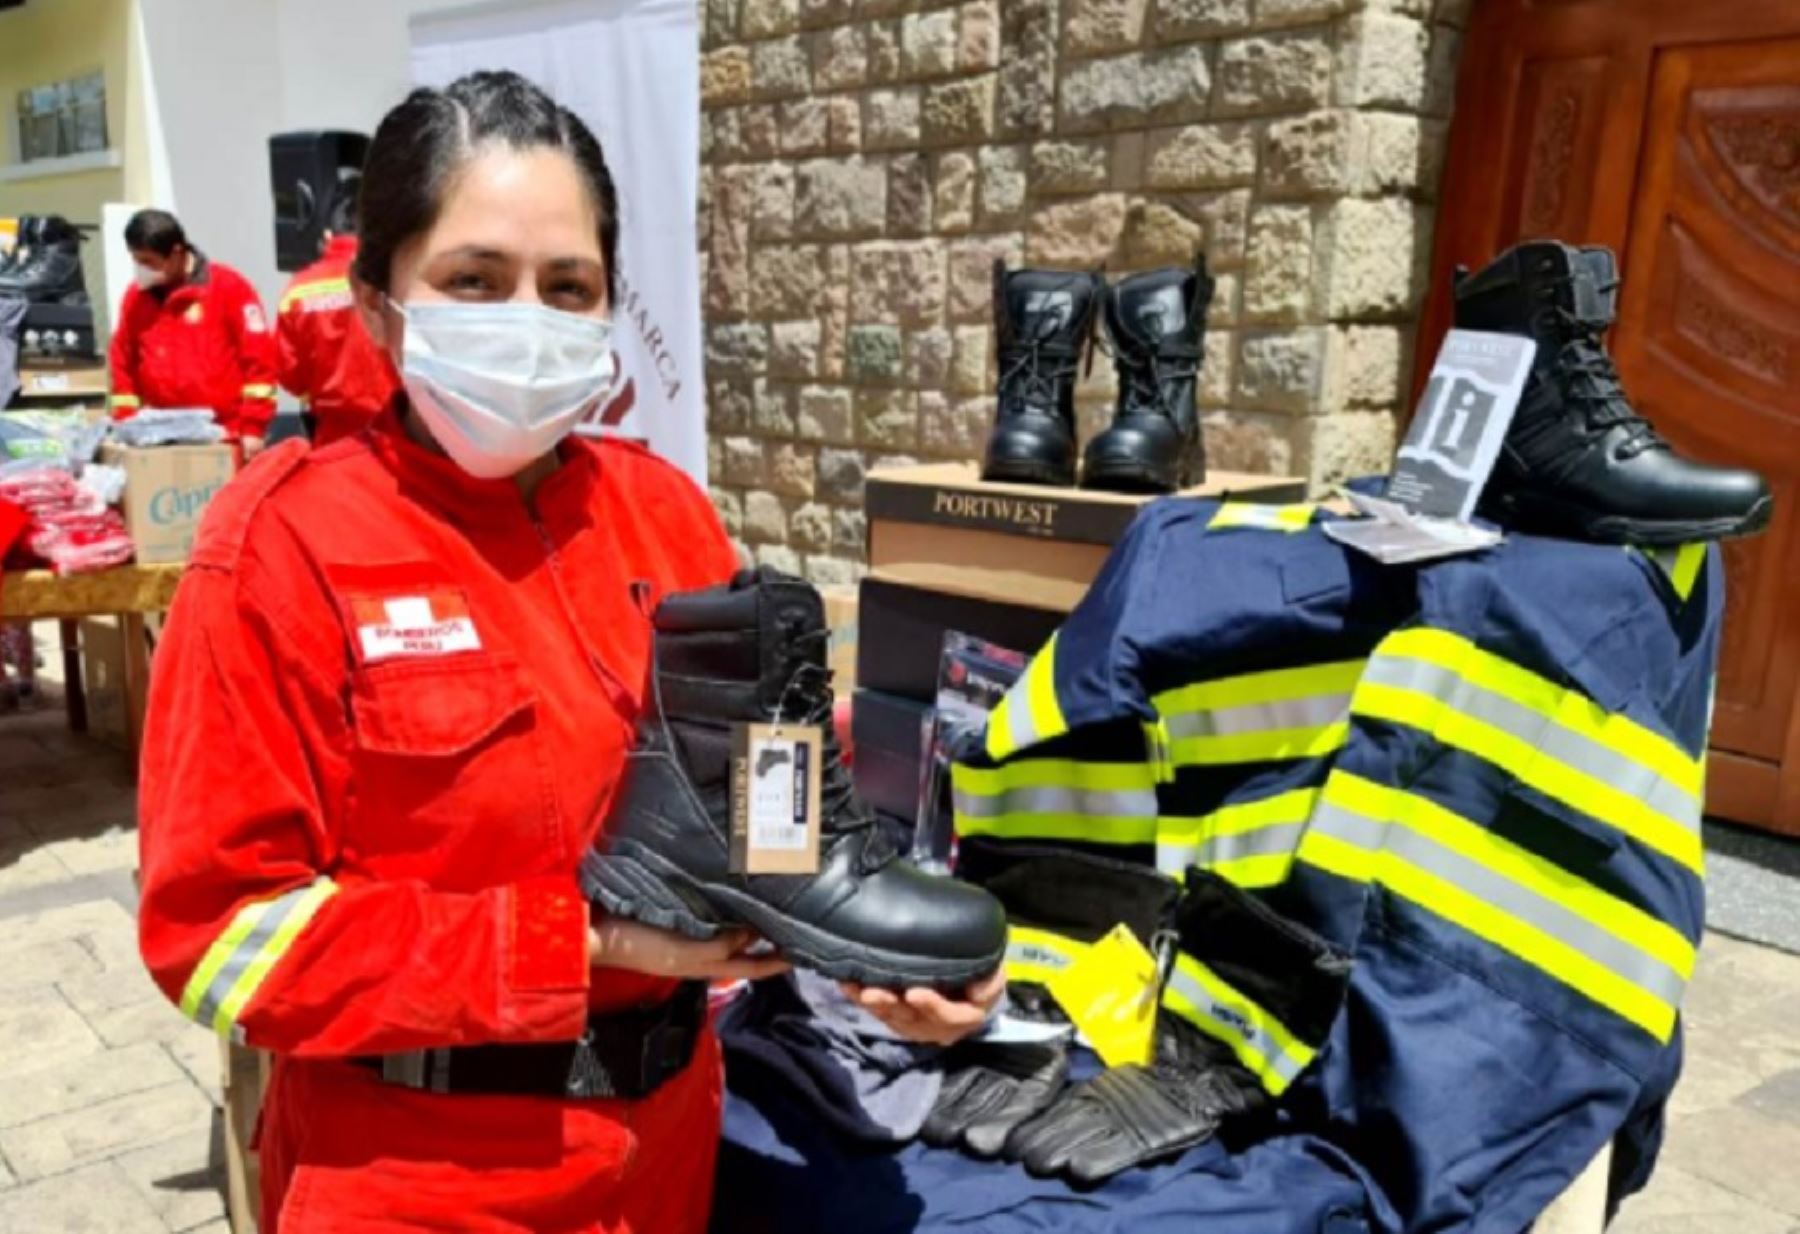 Las compañías de bomberos de Cajamarca, Celendín y Los Baños del Inca fueron beneficiadas con la donación de equipos especiales para atender incendios forestales y emergencias, gracias a la colecta pública “El sol sale para los bomberos” que organizó Caritas y la municipalidad provincial de Cajamarca, en octubre y noviembre del año pasado.